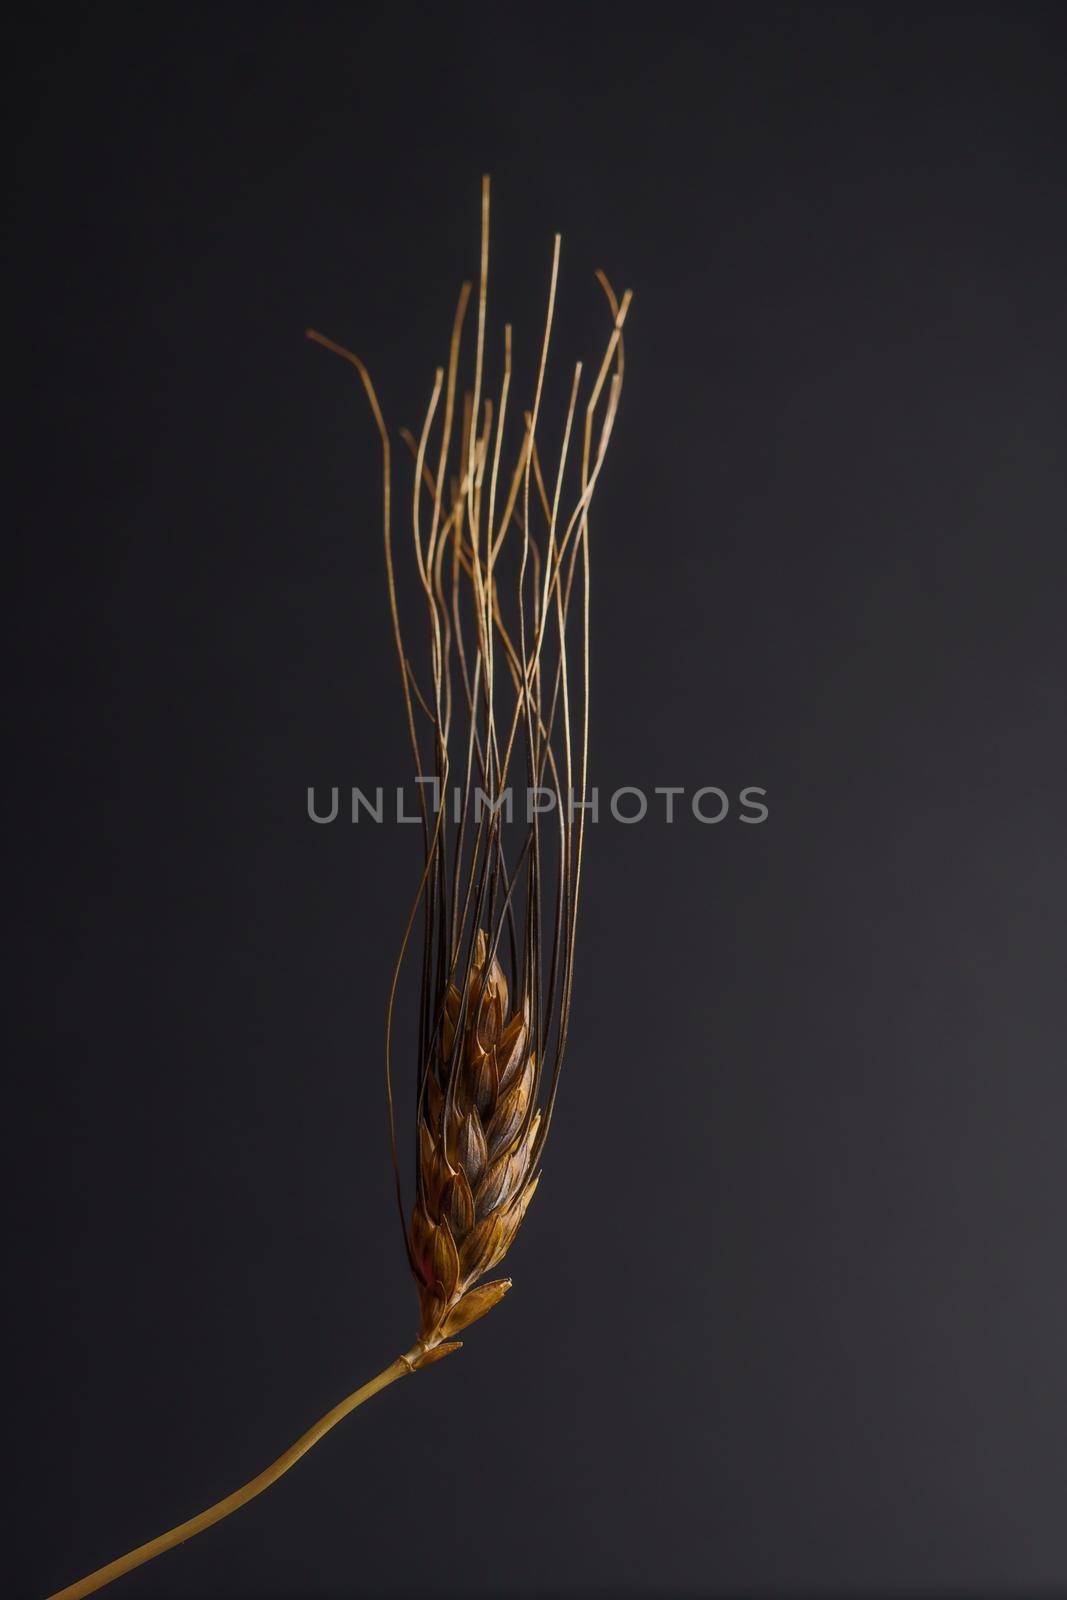 illuminated ear of wheat on a dark background by joseantona